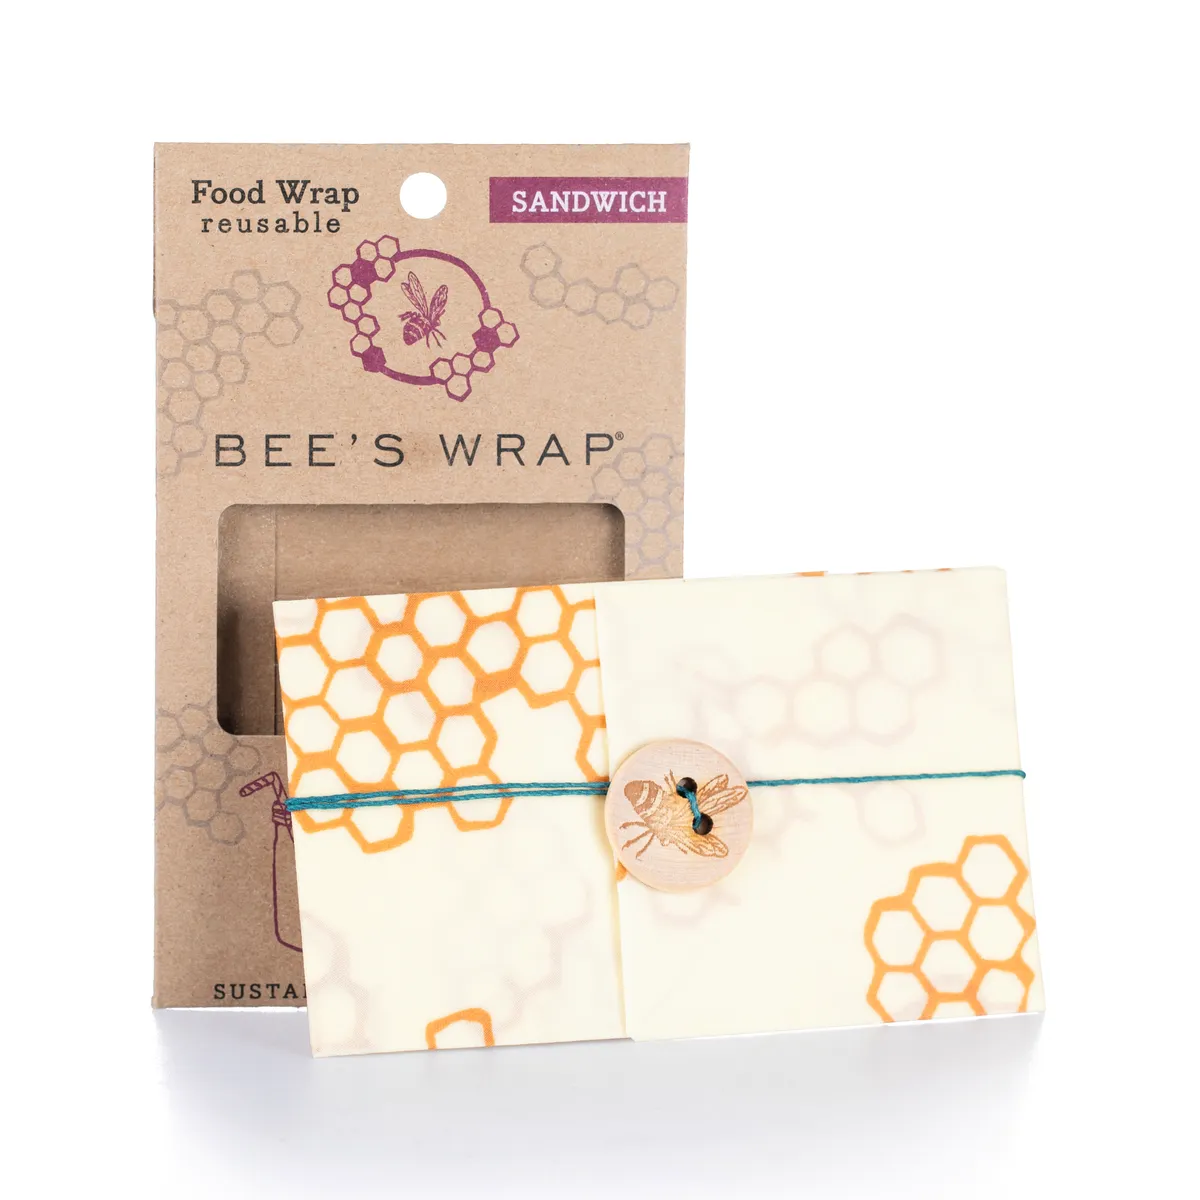 Beeswax wrap